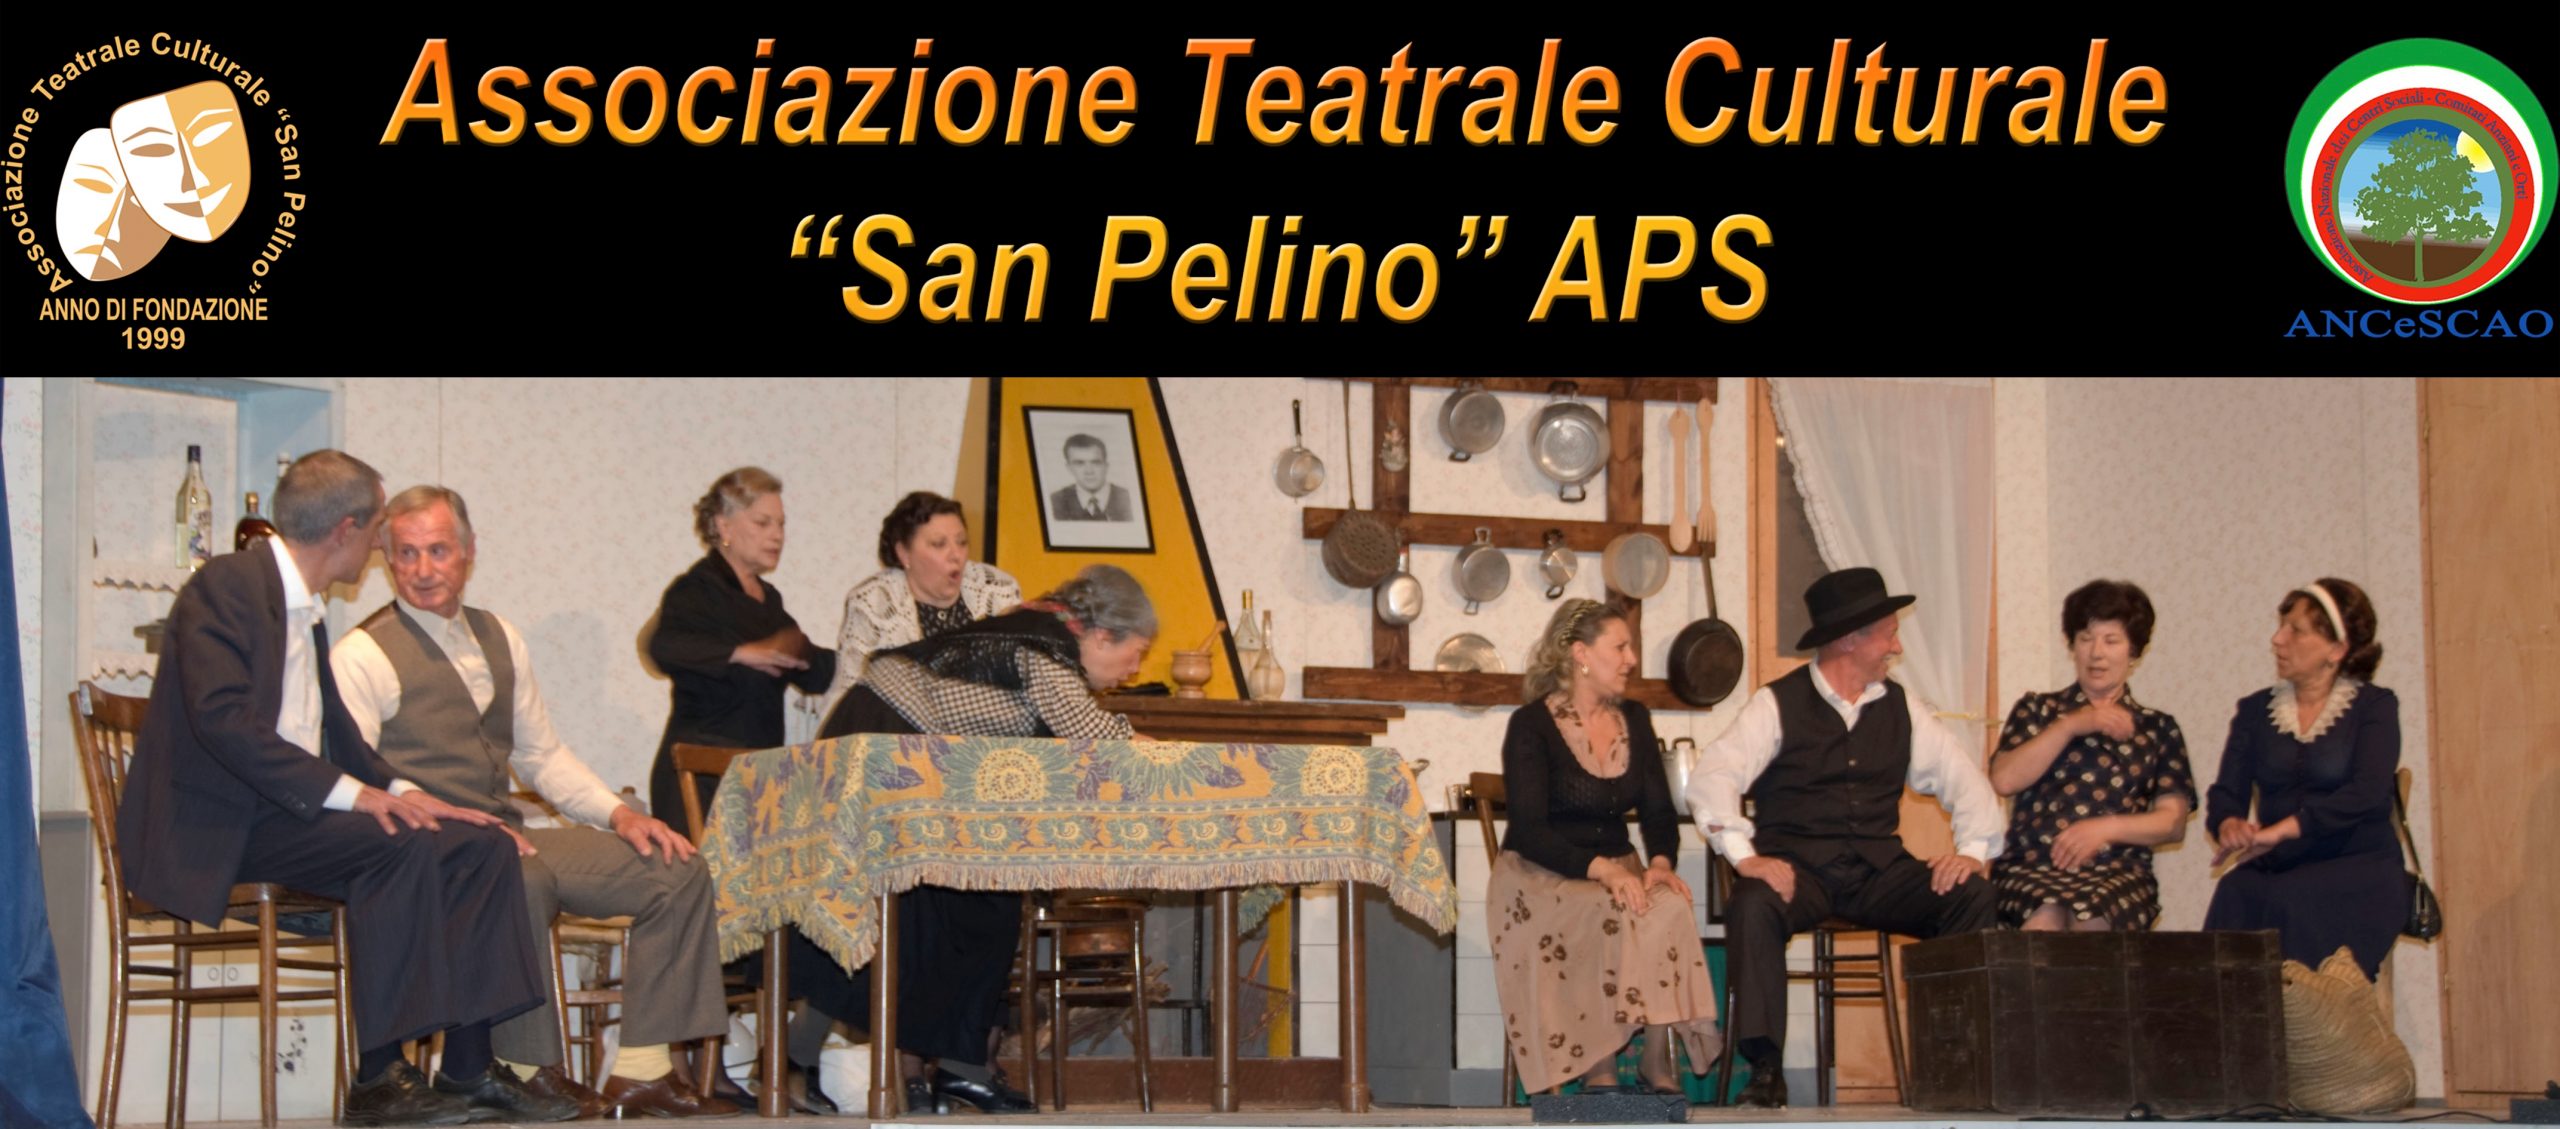 Associazione Teatrale Culturale "San Pelino"